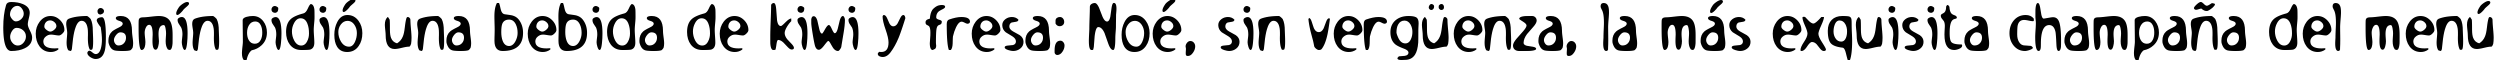 Пример написания шрифтом Holstein текста на испанском